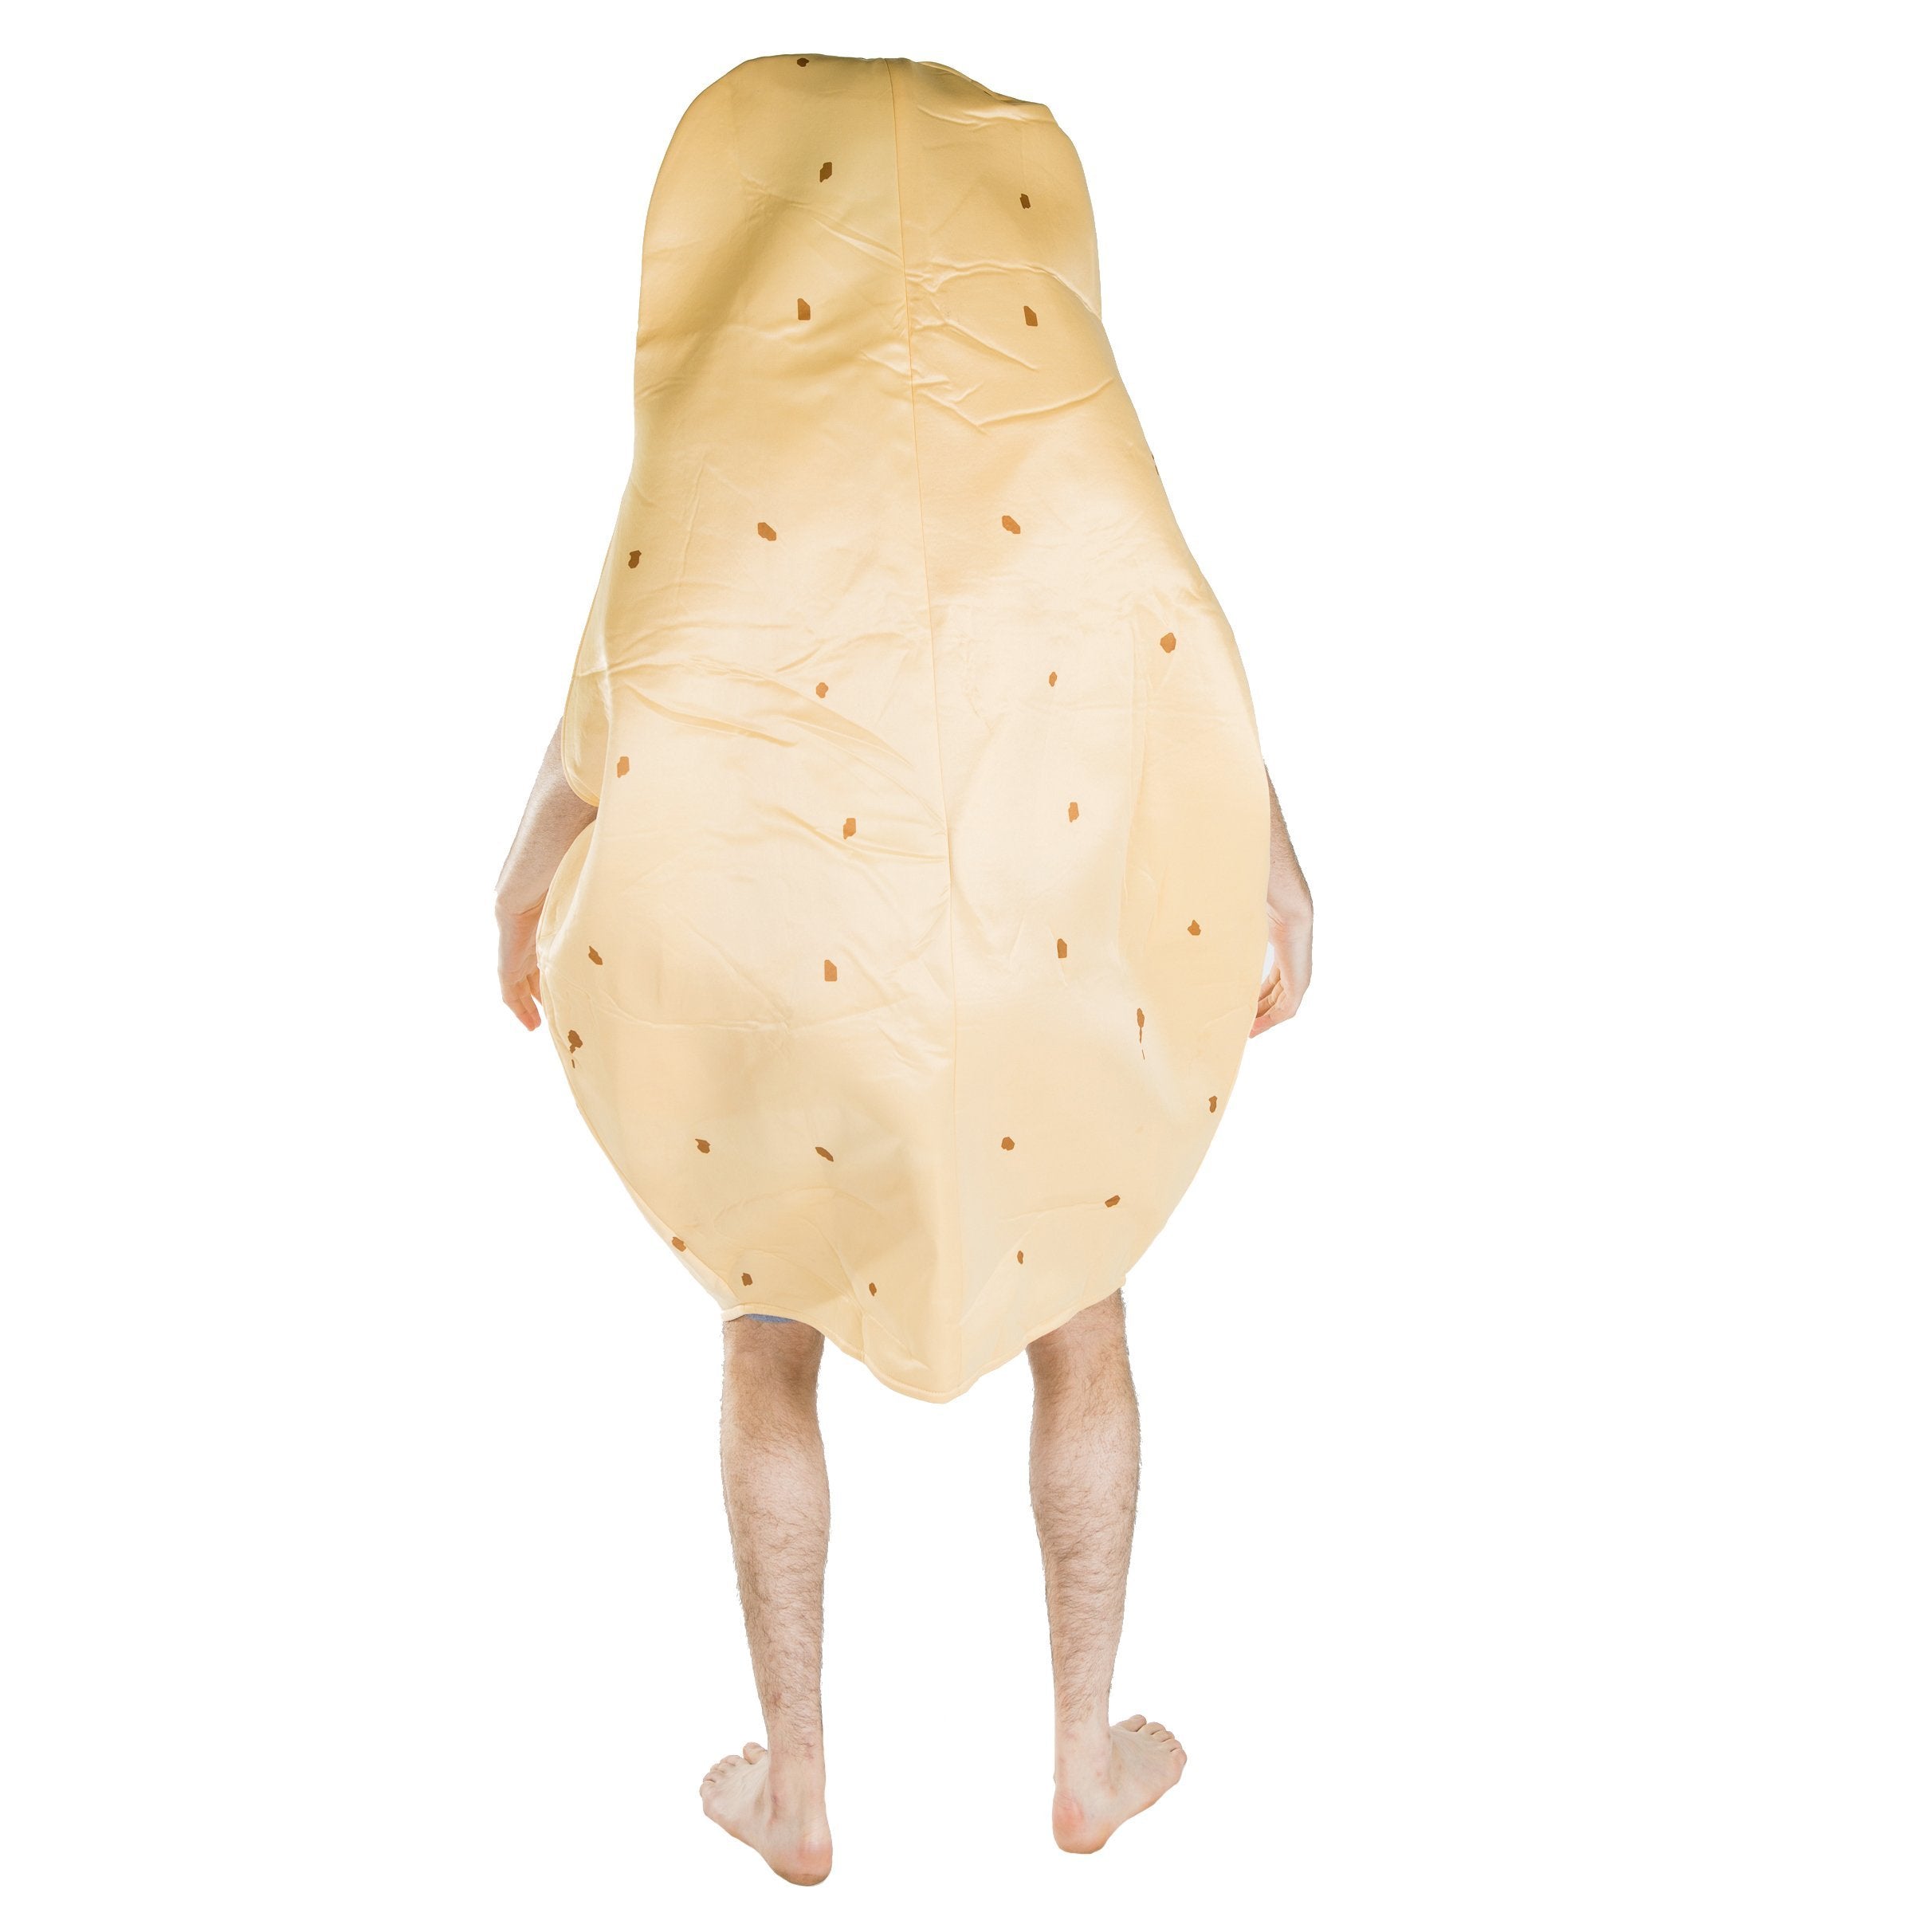 Bodysocks - Potato Costume